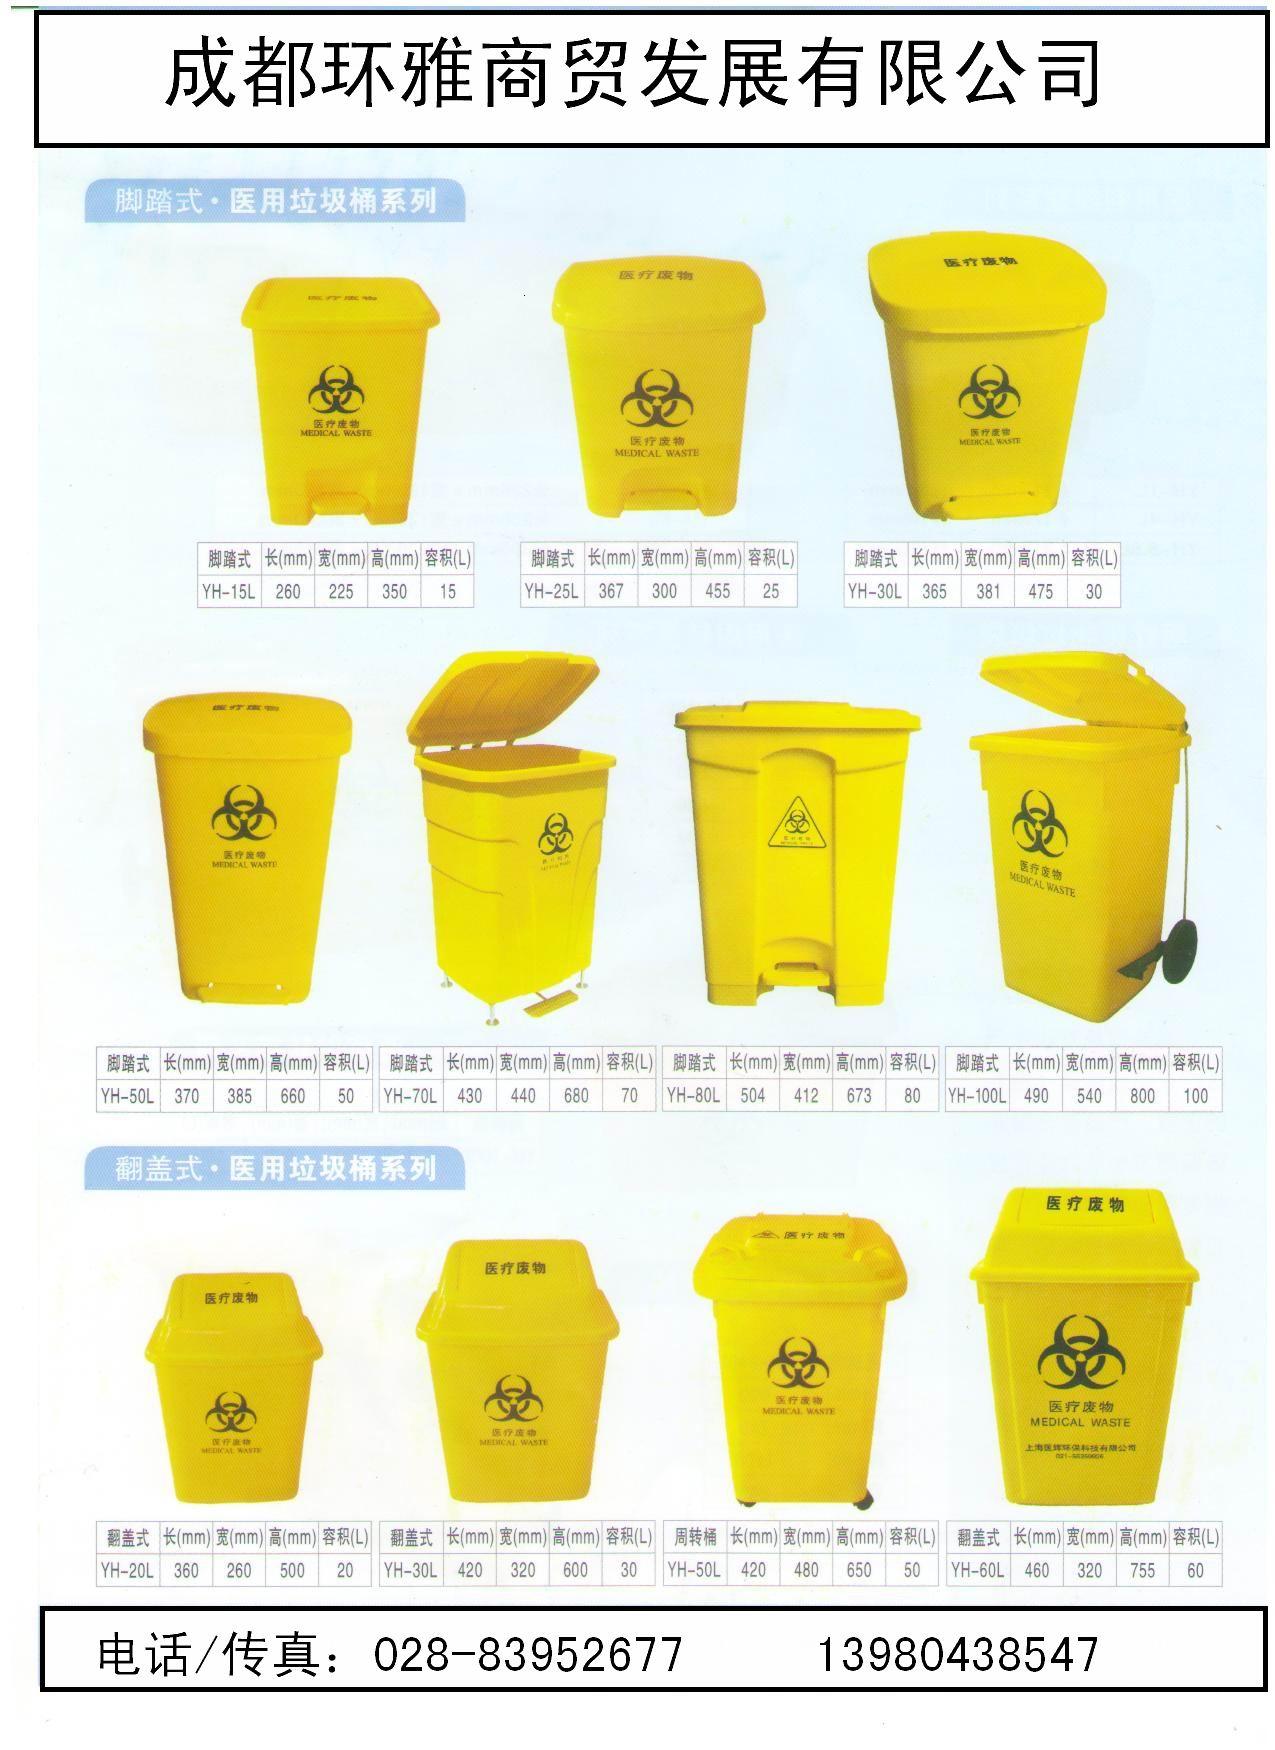 医疗垃圾桶规格图